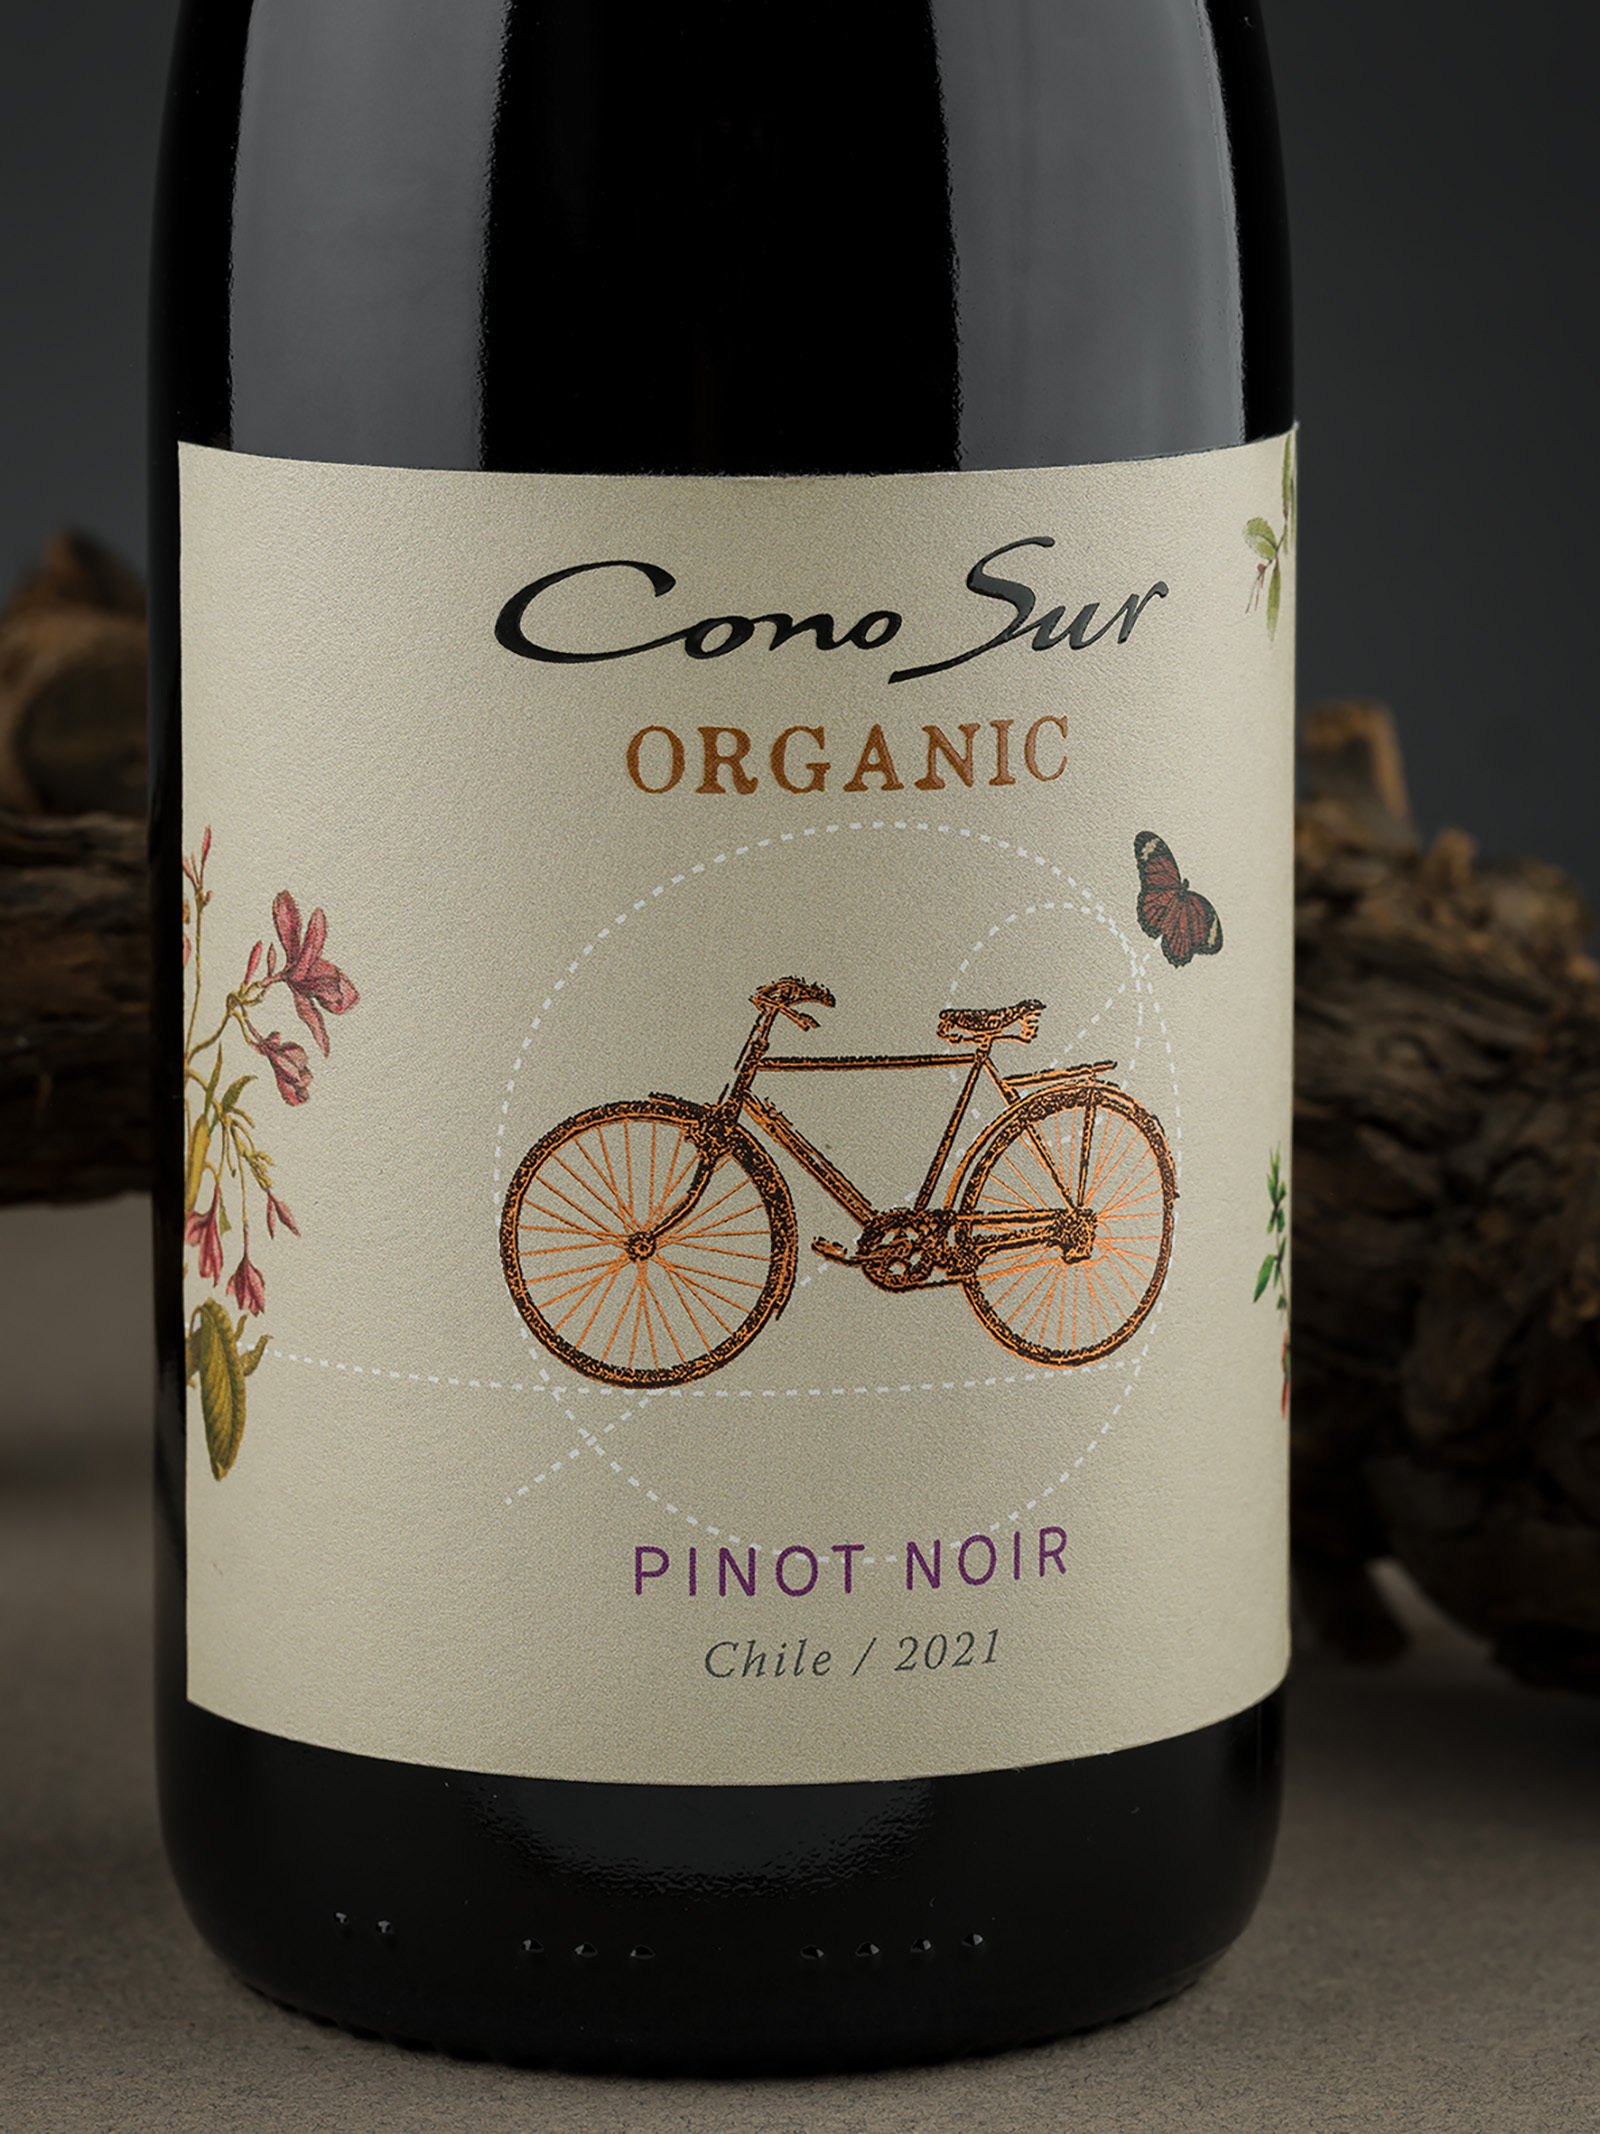 Wine Label Design for Cono Sur Organic